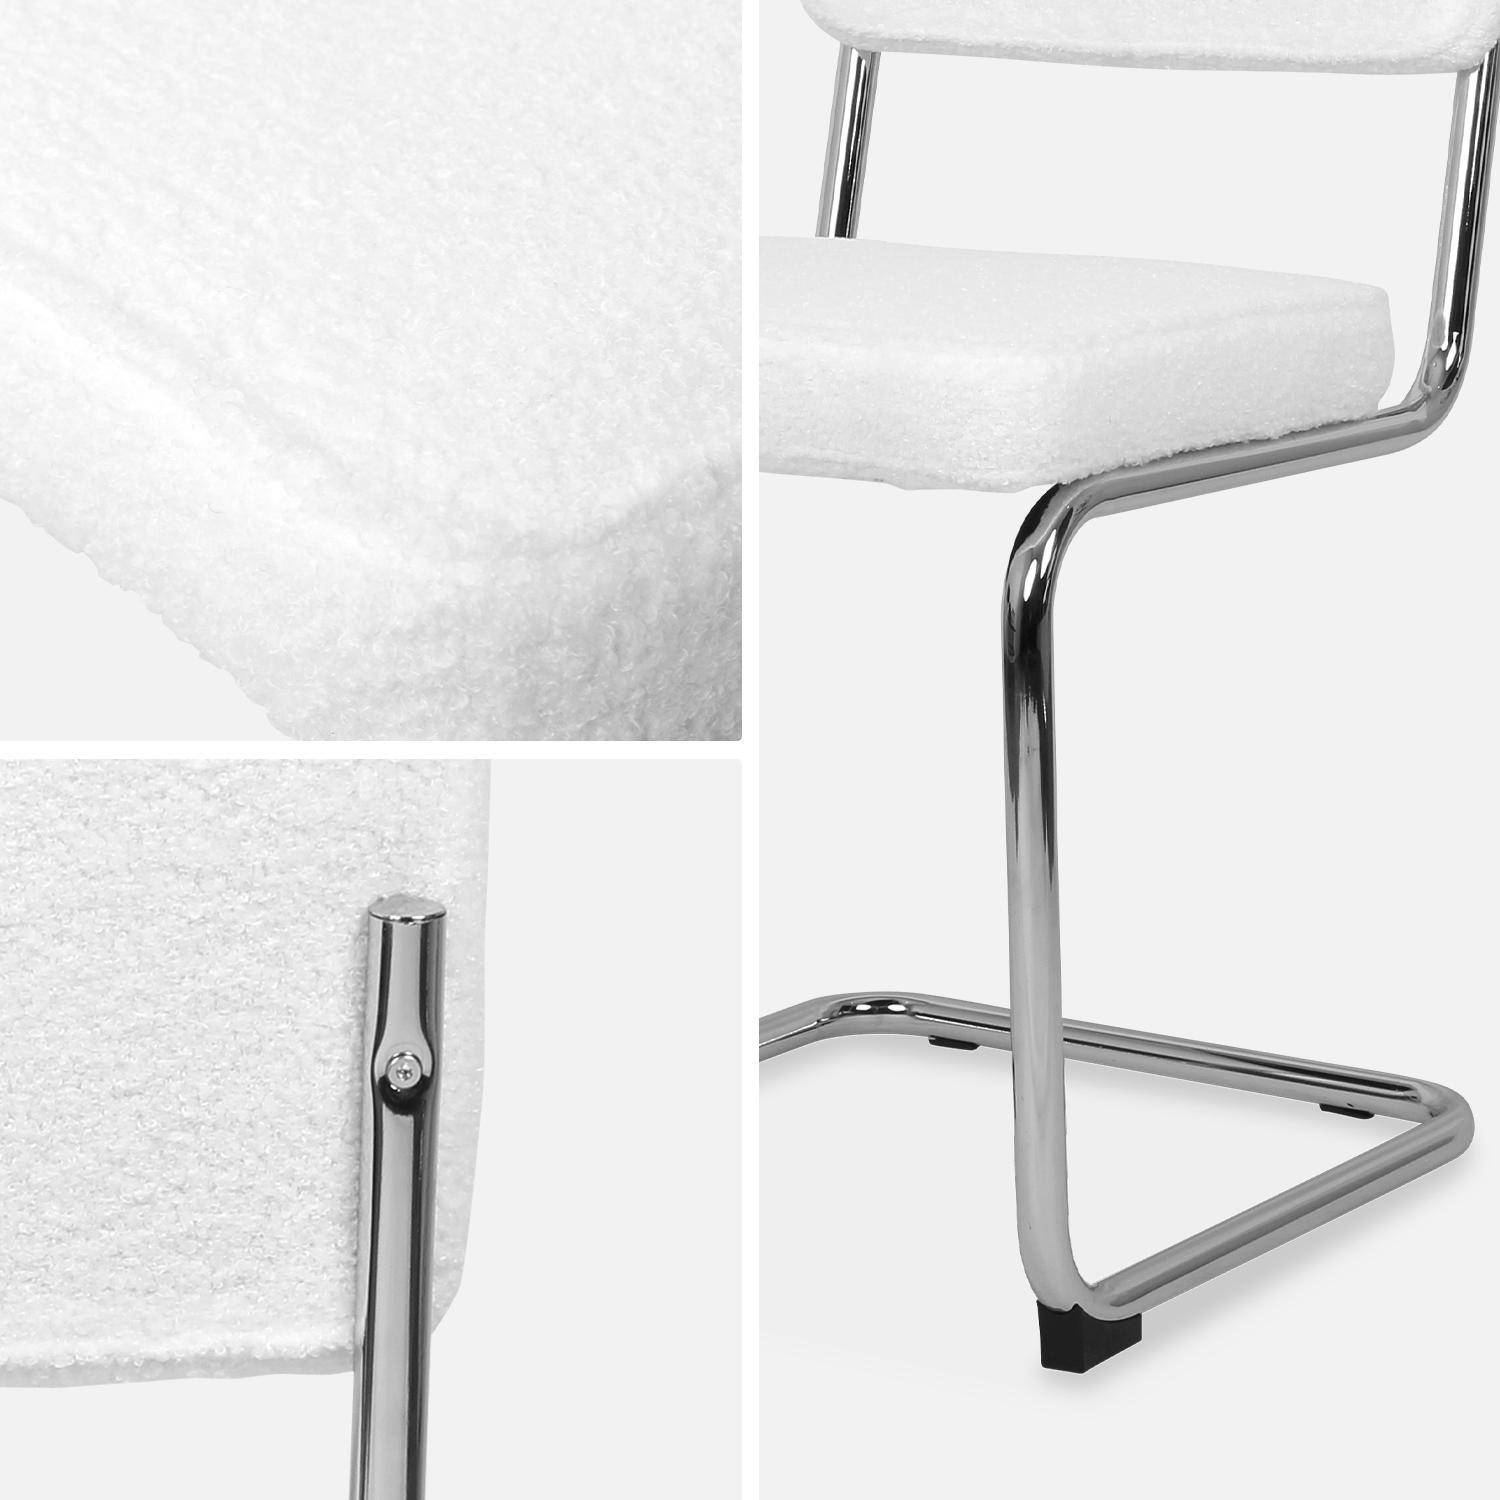 2 cadeiras cantilever - Maja - com caracóis brancos, 46 x 54,5 x 84,5cm Photo7